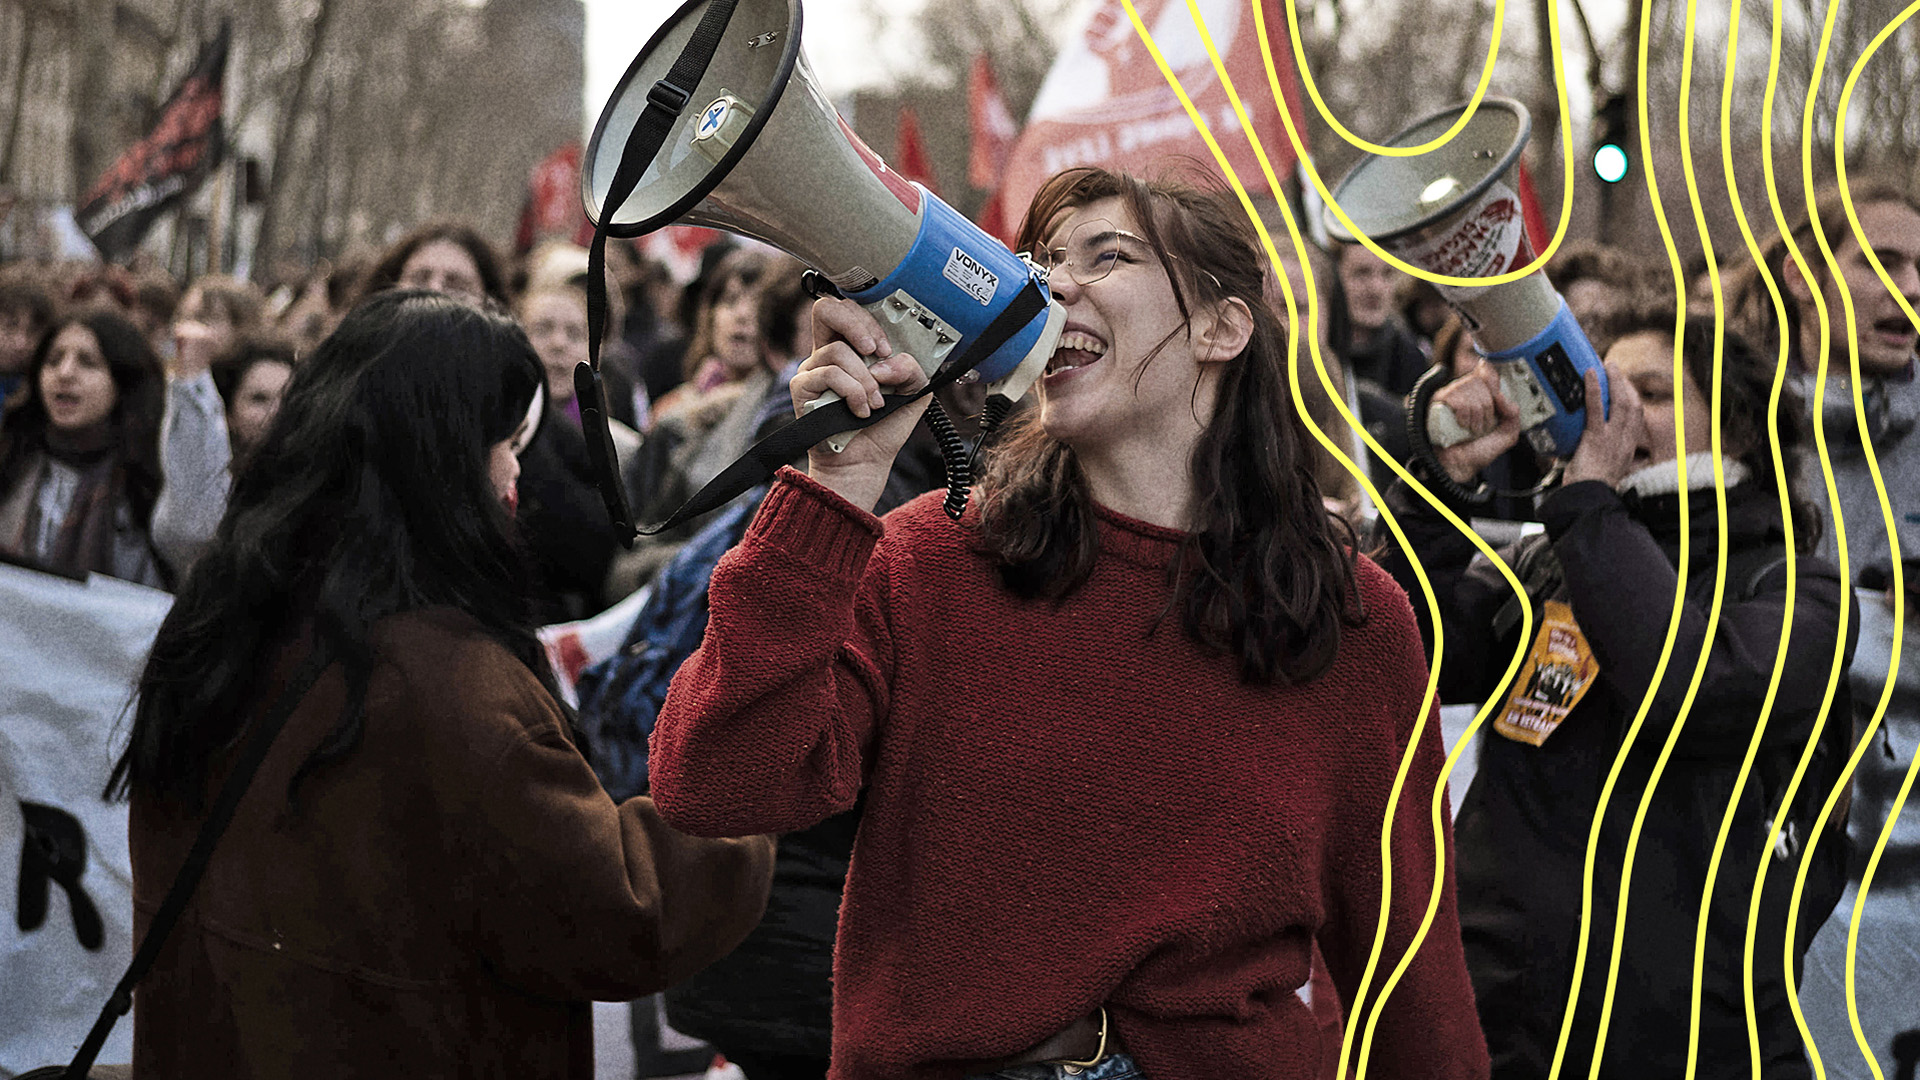 Menschen demonstrieren gegen eine geplante Rentenreform in Frankreich | IMAGO / IP3press / Alexis Sciard